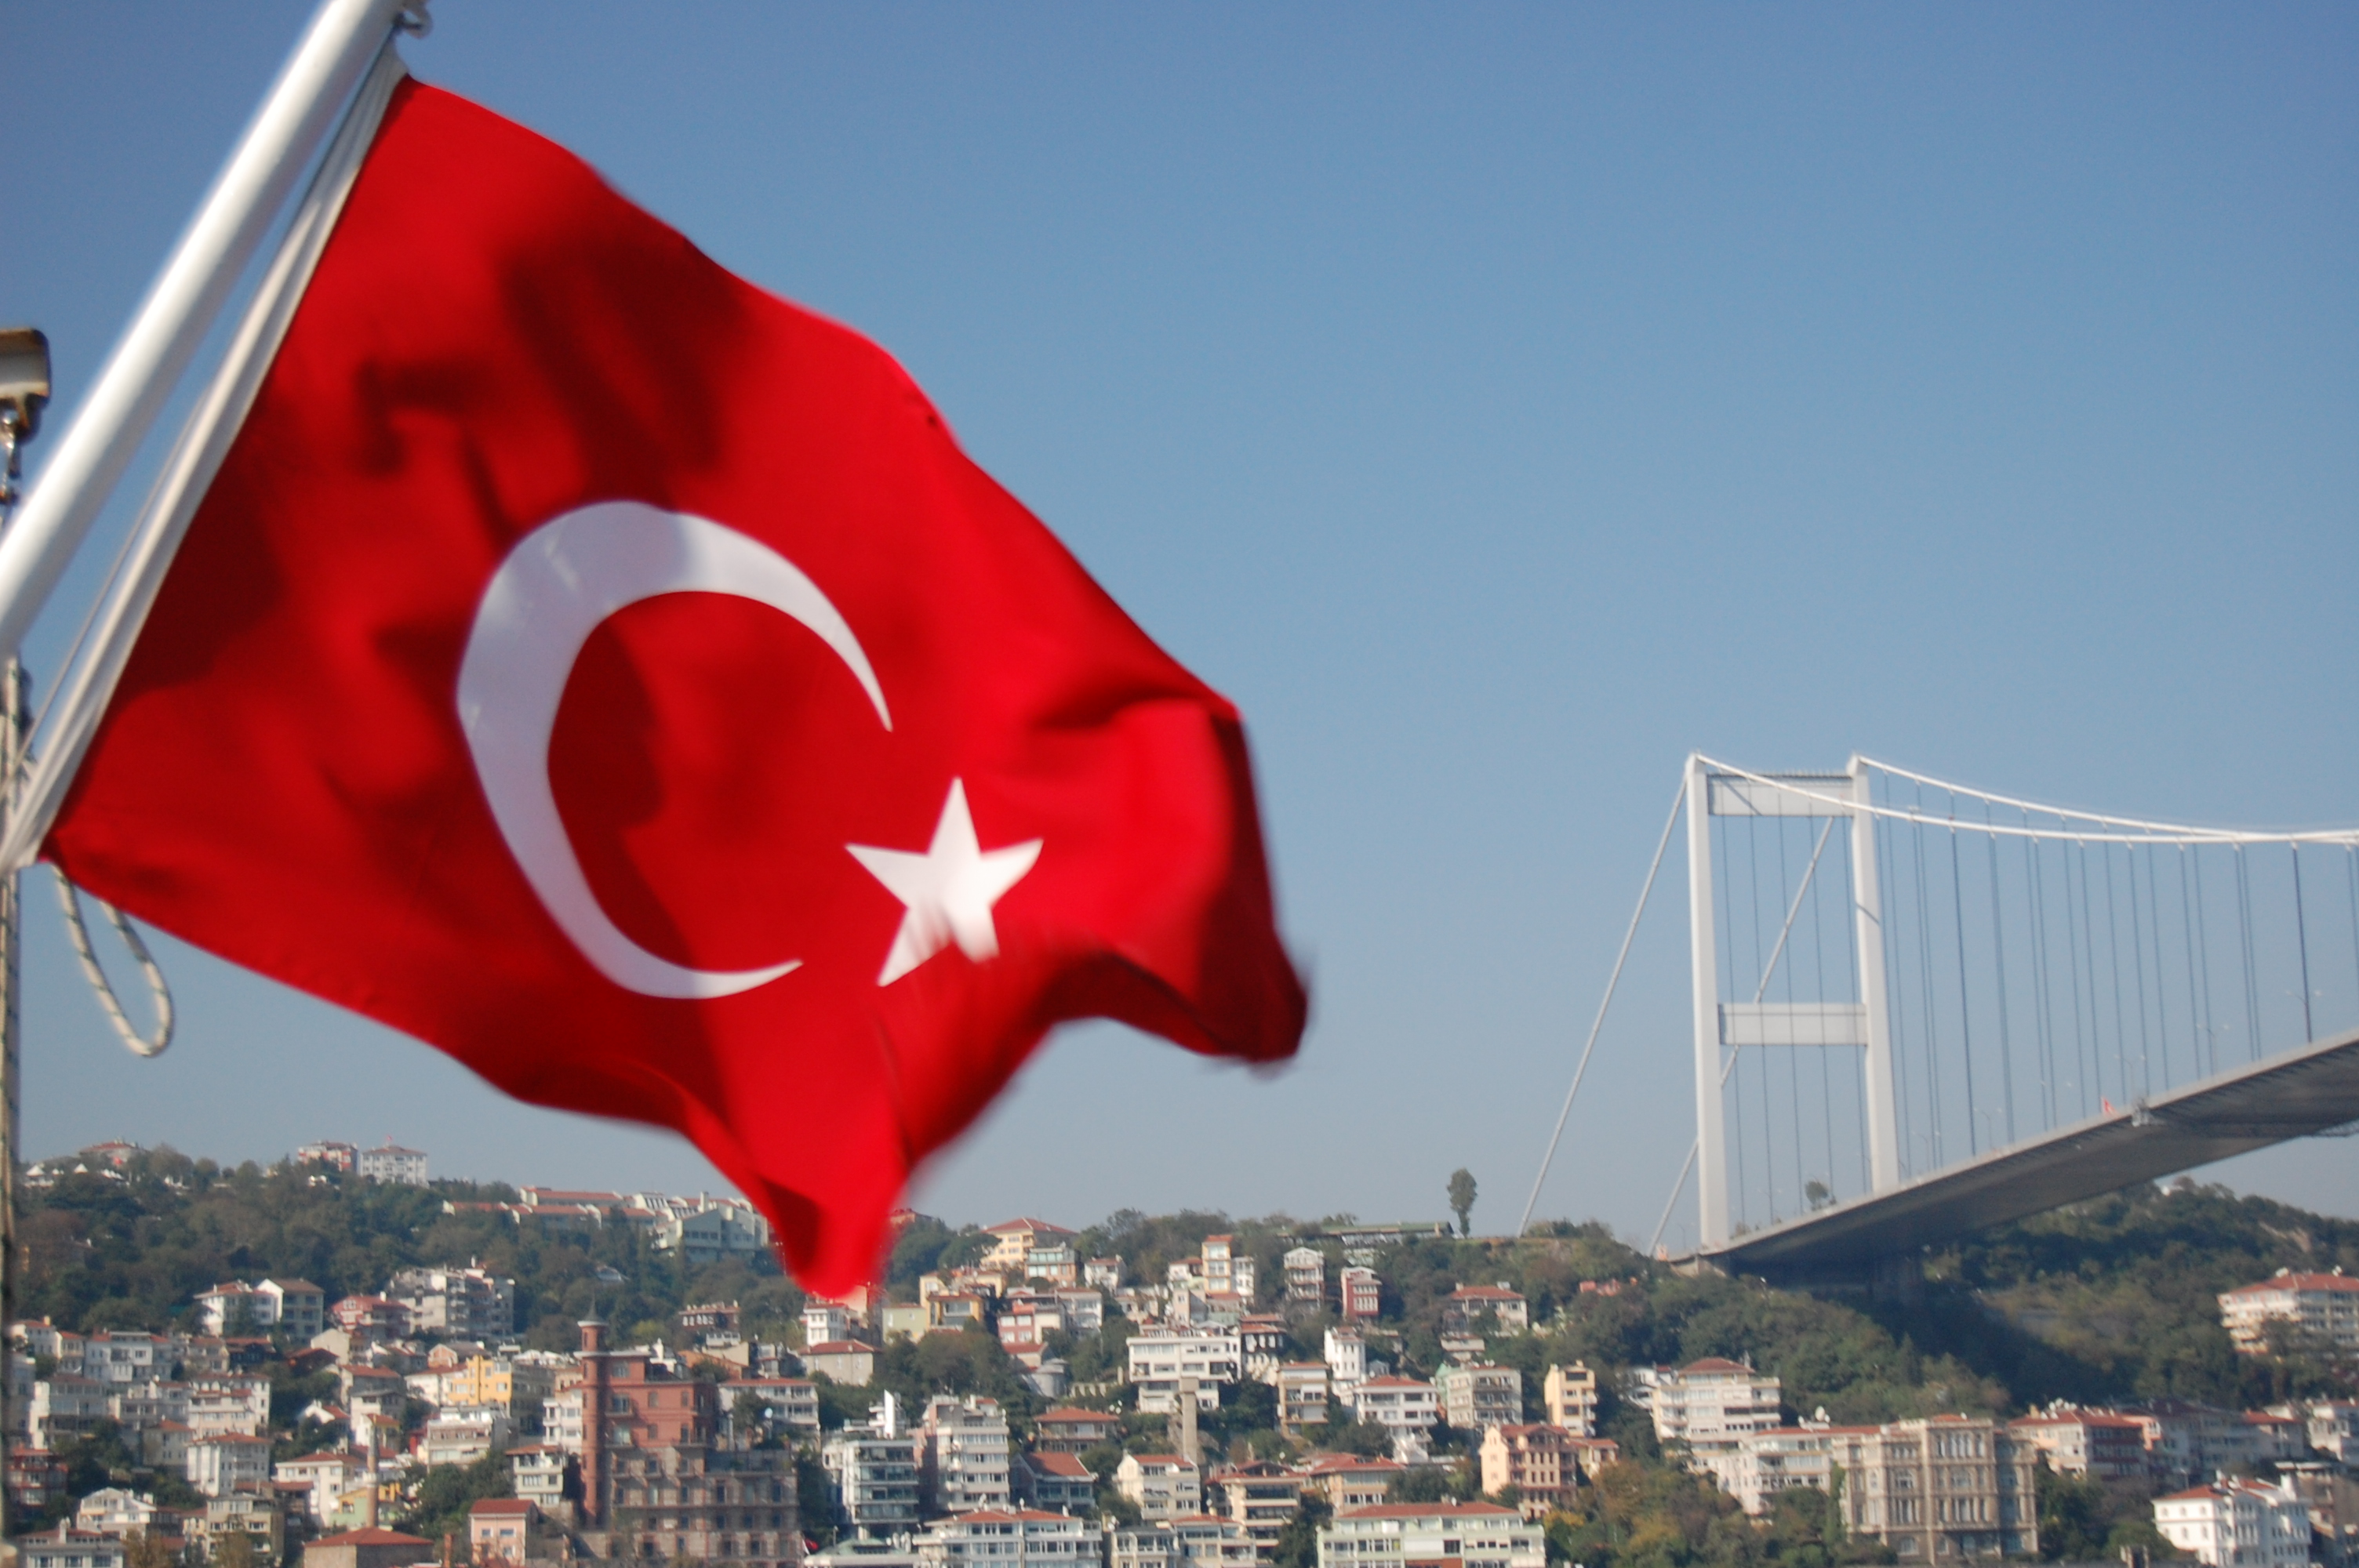 Τουρκία: Αυτή είναι η επιστημονική έρευνα που τρομάζει την Ελλάδα - Γιατί ανησυχούν οι αρχές